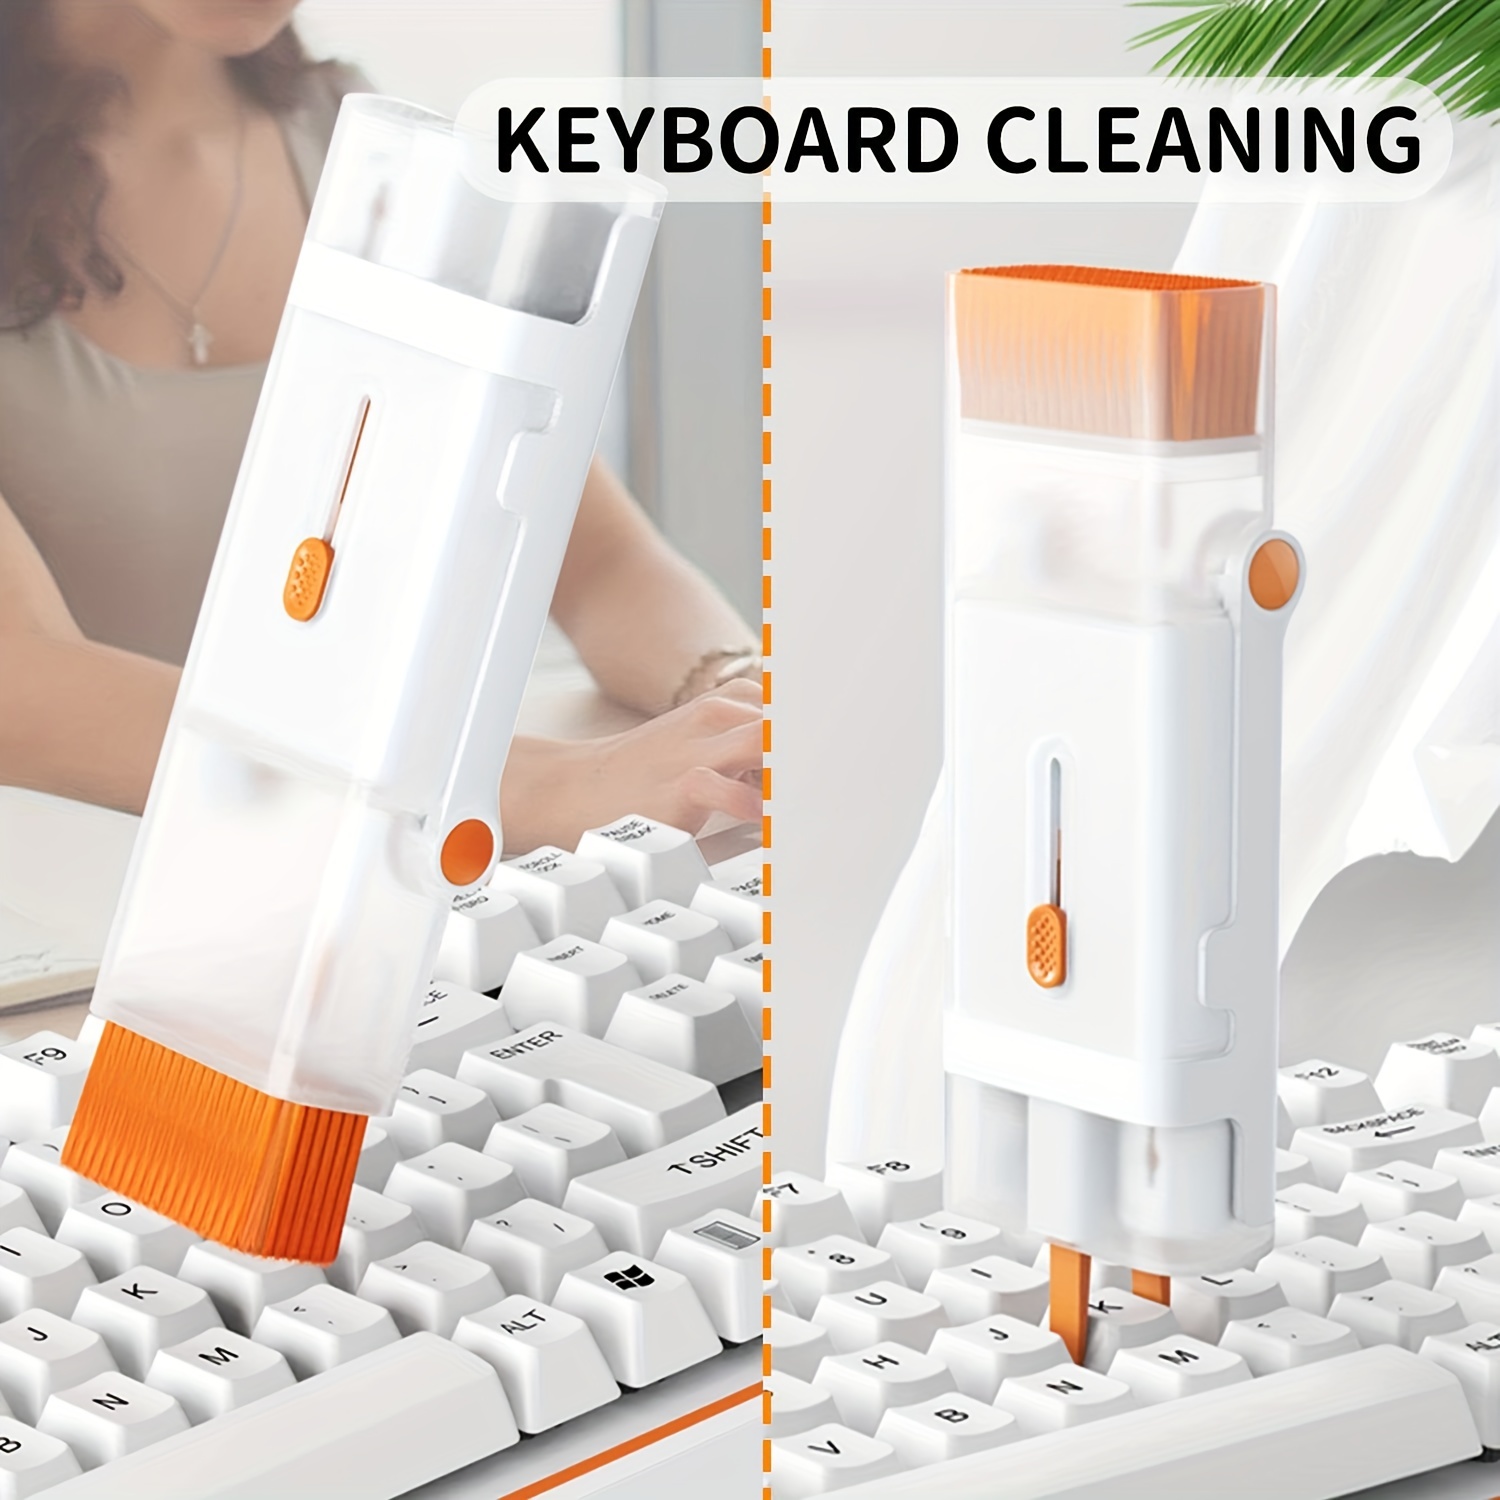 Kit de limpieza electrónica 7 en 1, limpiador de teclado, kit de limpieza  de laptop para monitor, teléfono celular, Bluetooth, auriculares, Lego